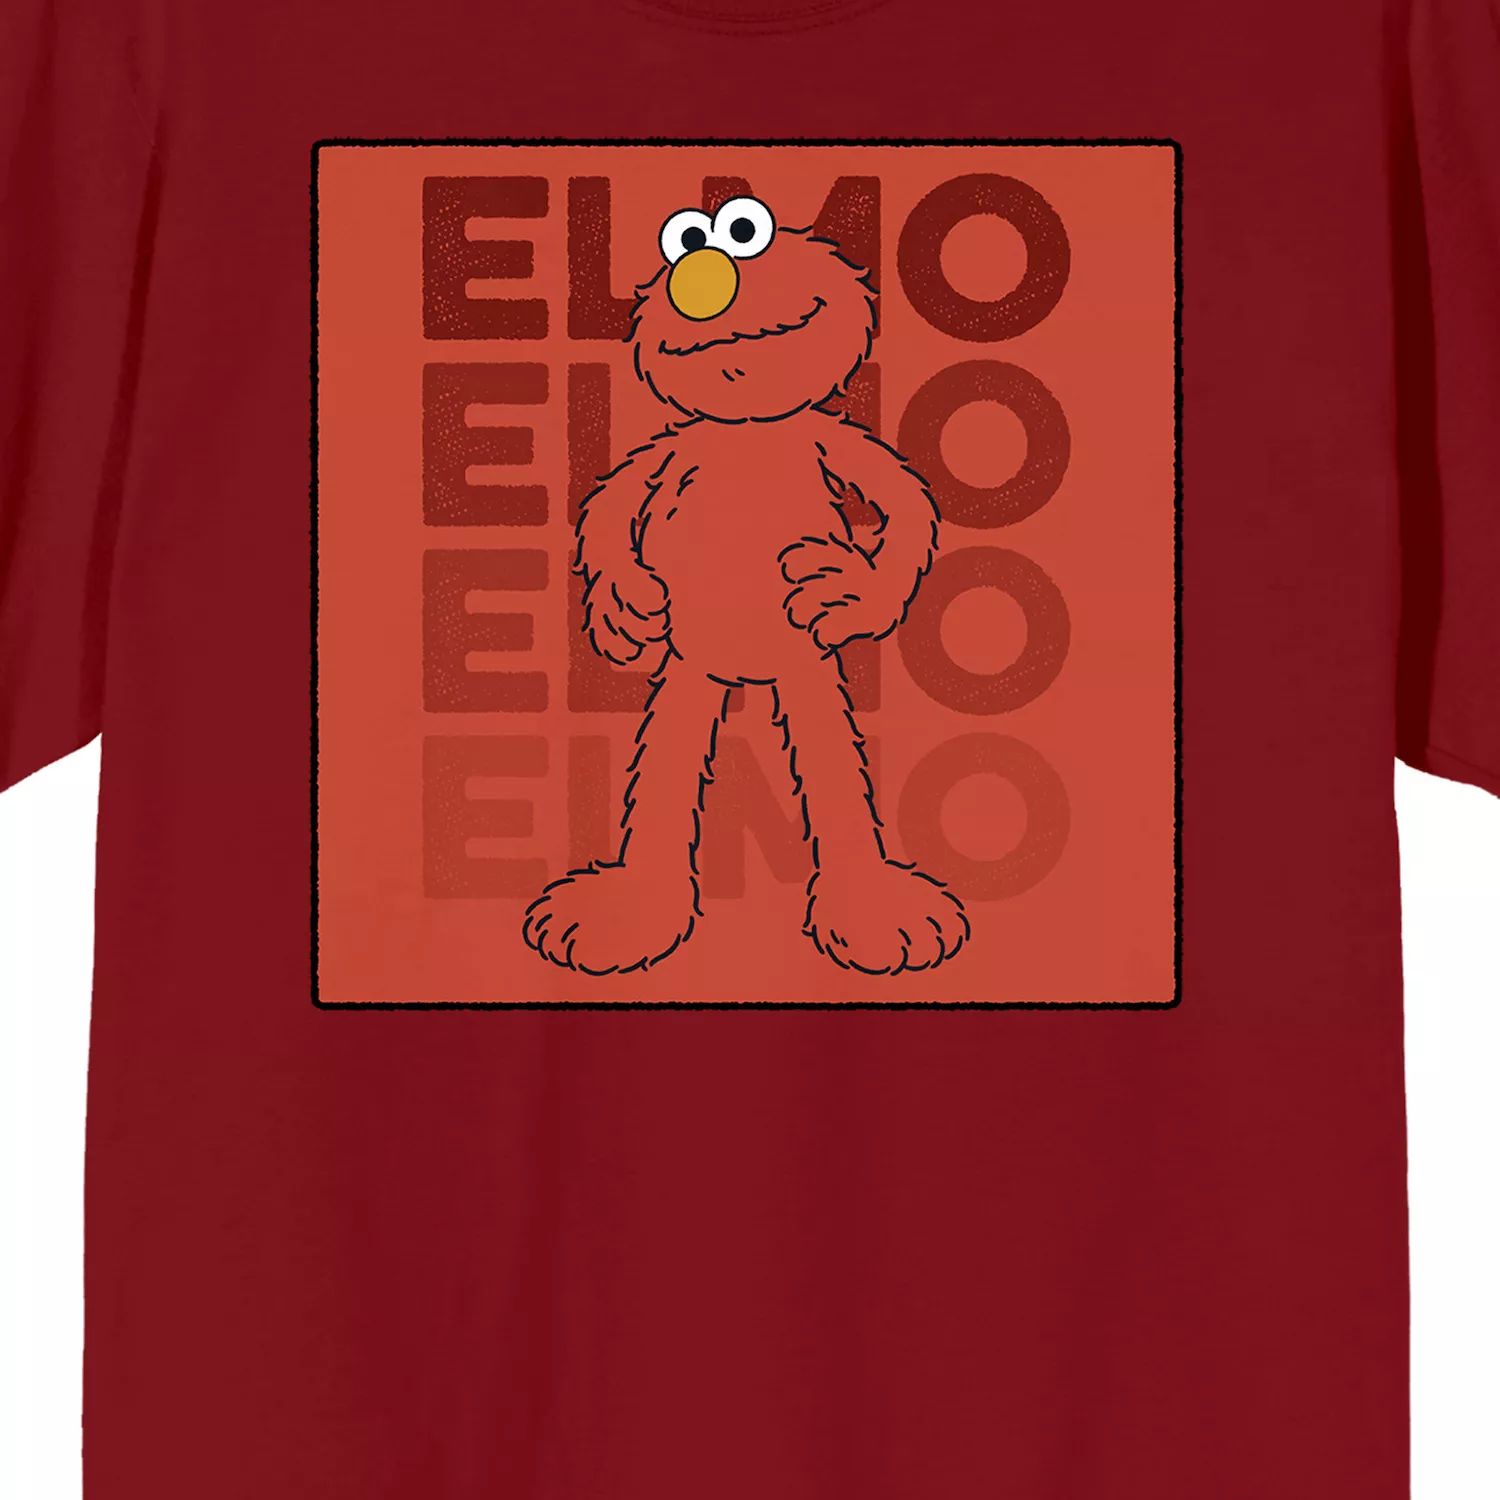 Мужская футболка с персонажем Элмо «Улица Сезам» Licensed Character носки женские хлопковые с рисунком печенья монстра элмо улица сезам